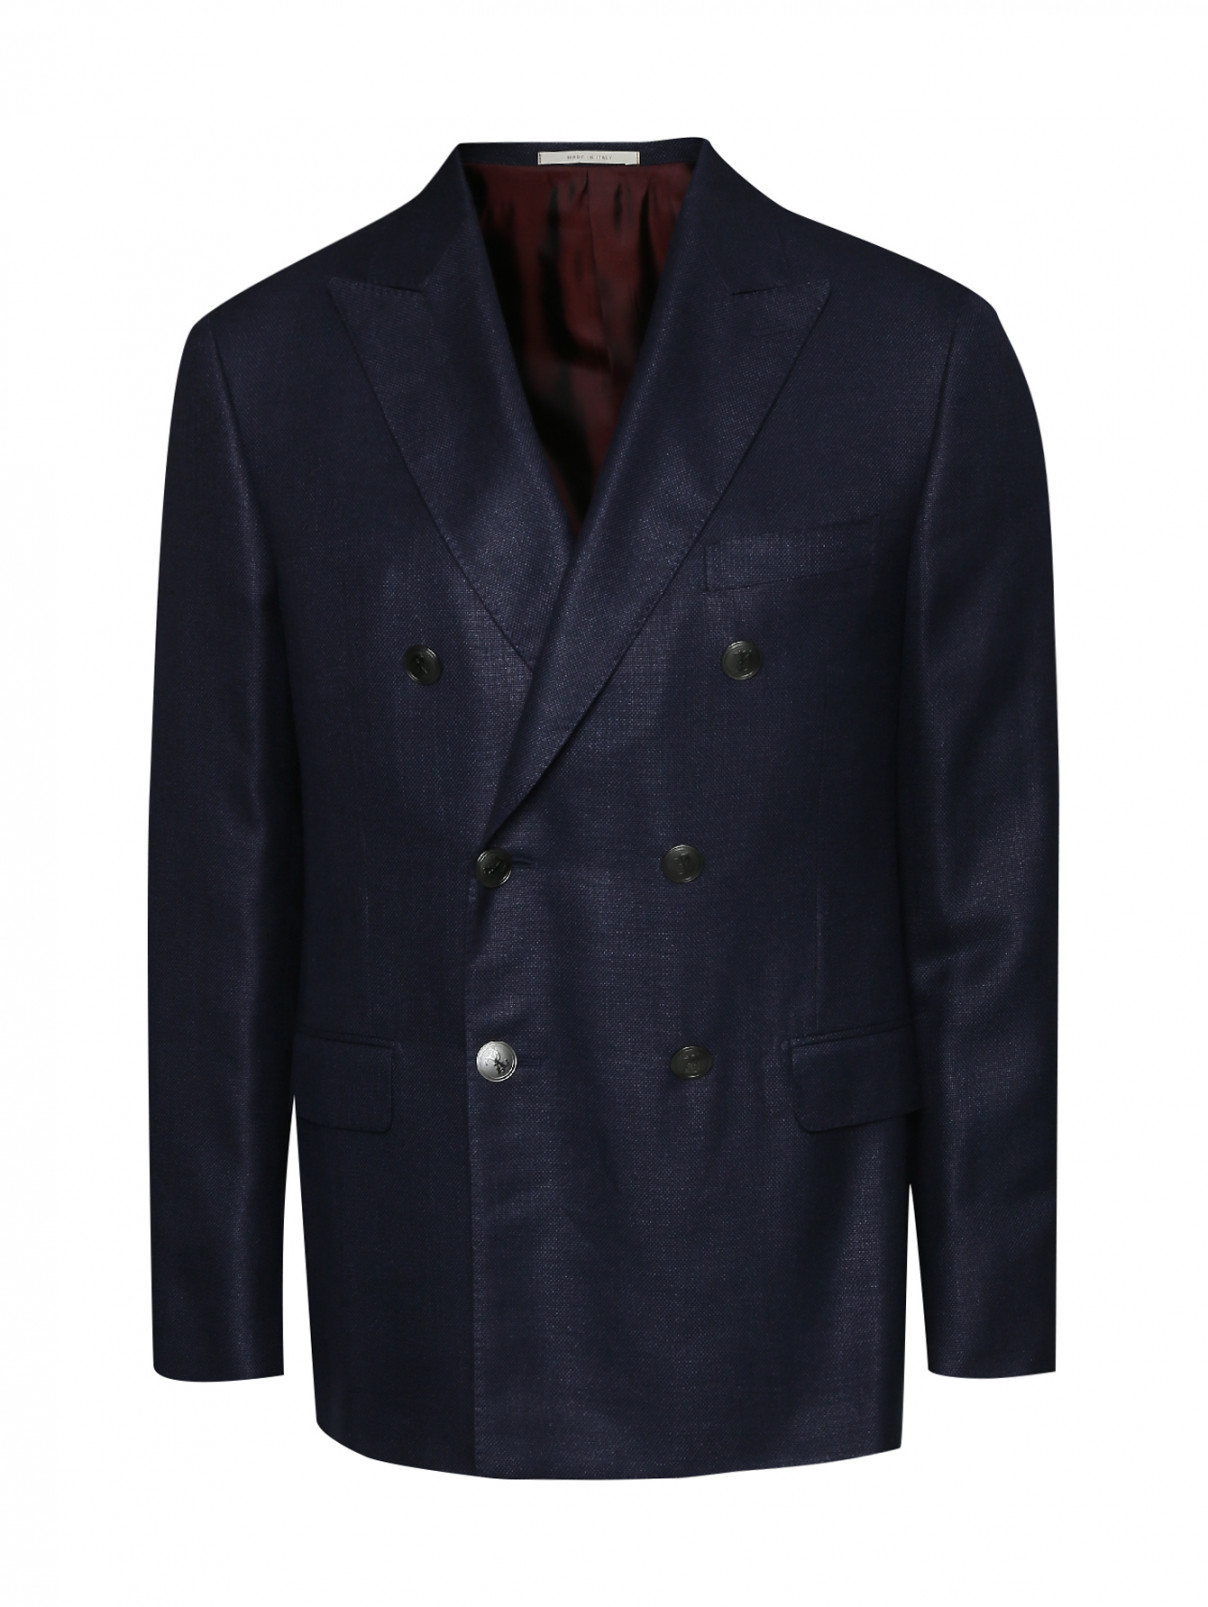 Пиджак двубортный из шерсти и шелка Pal Zileri  –  Общий вид  – Цвет:  Синий